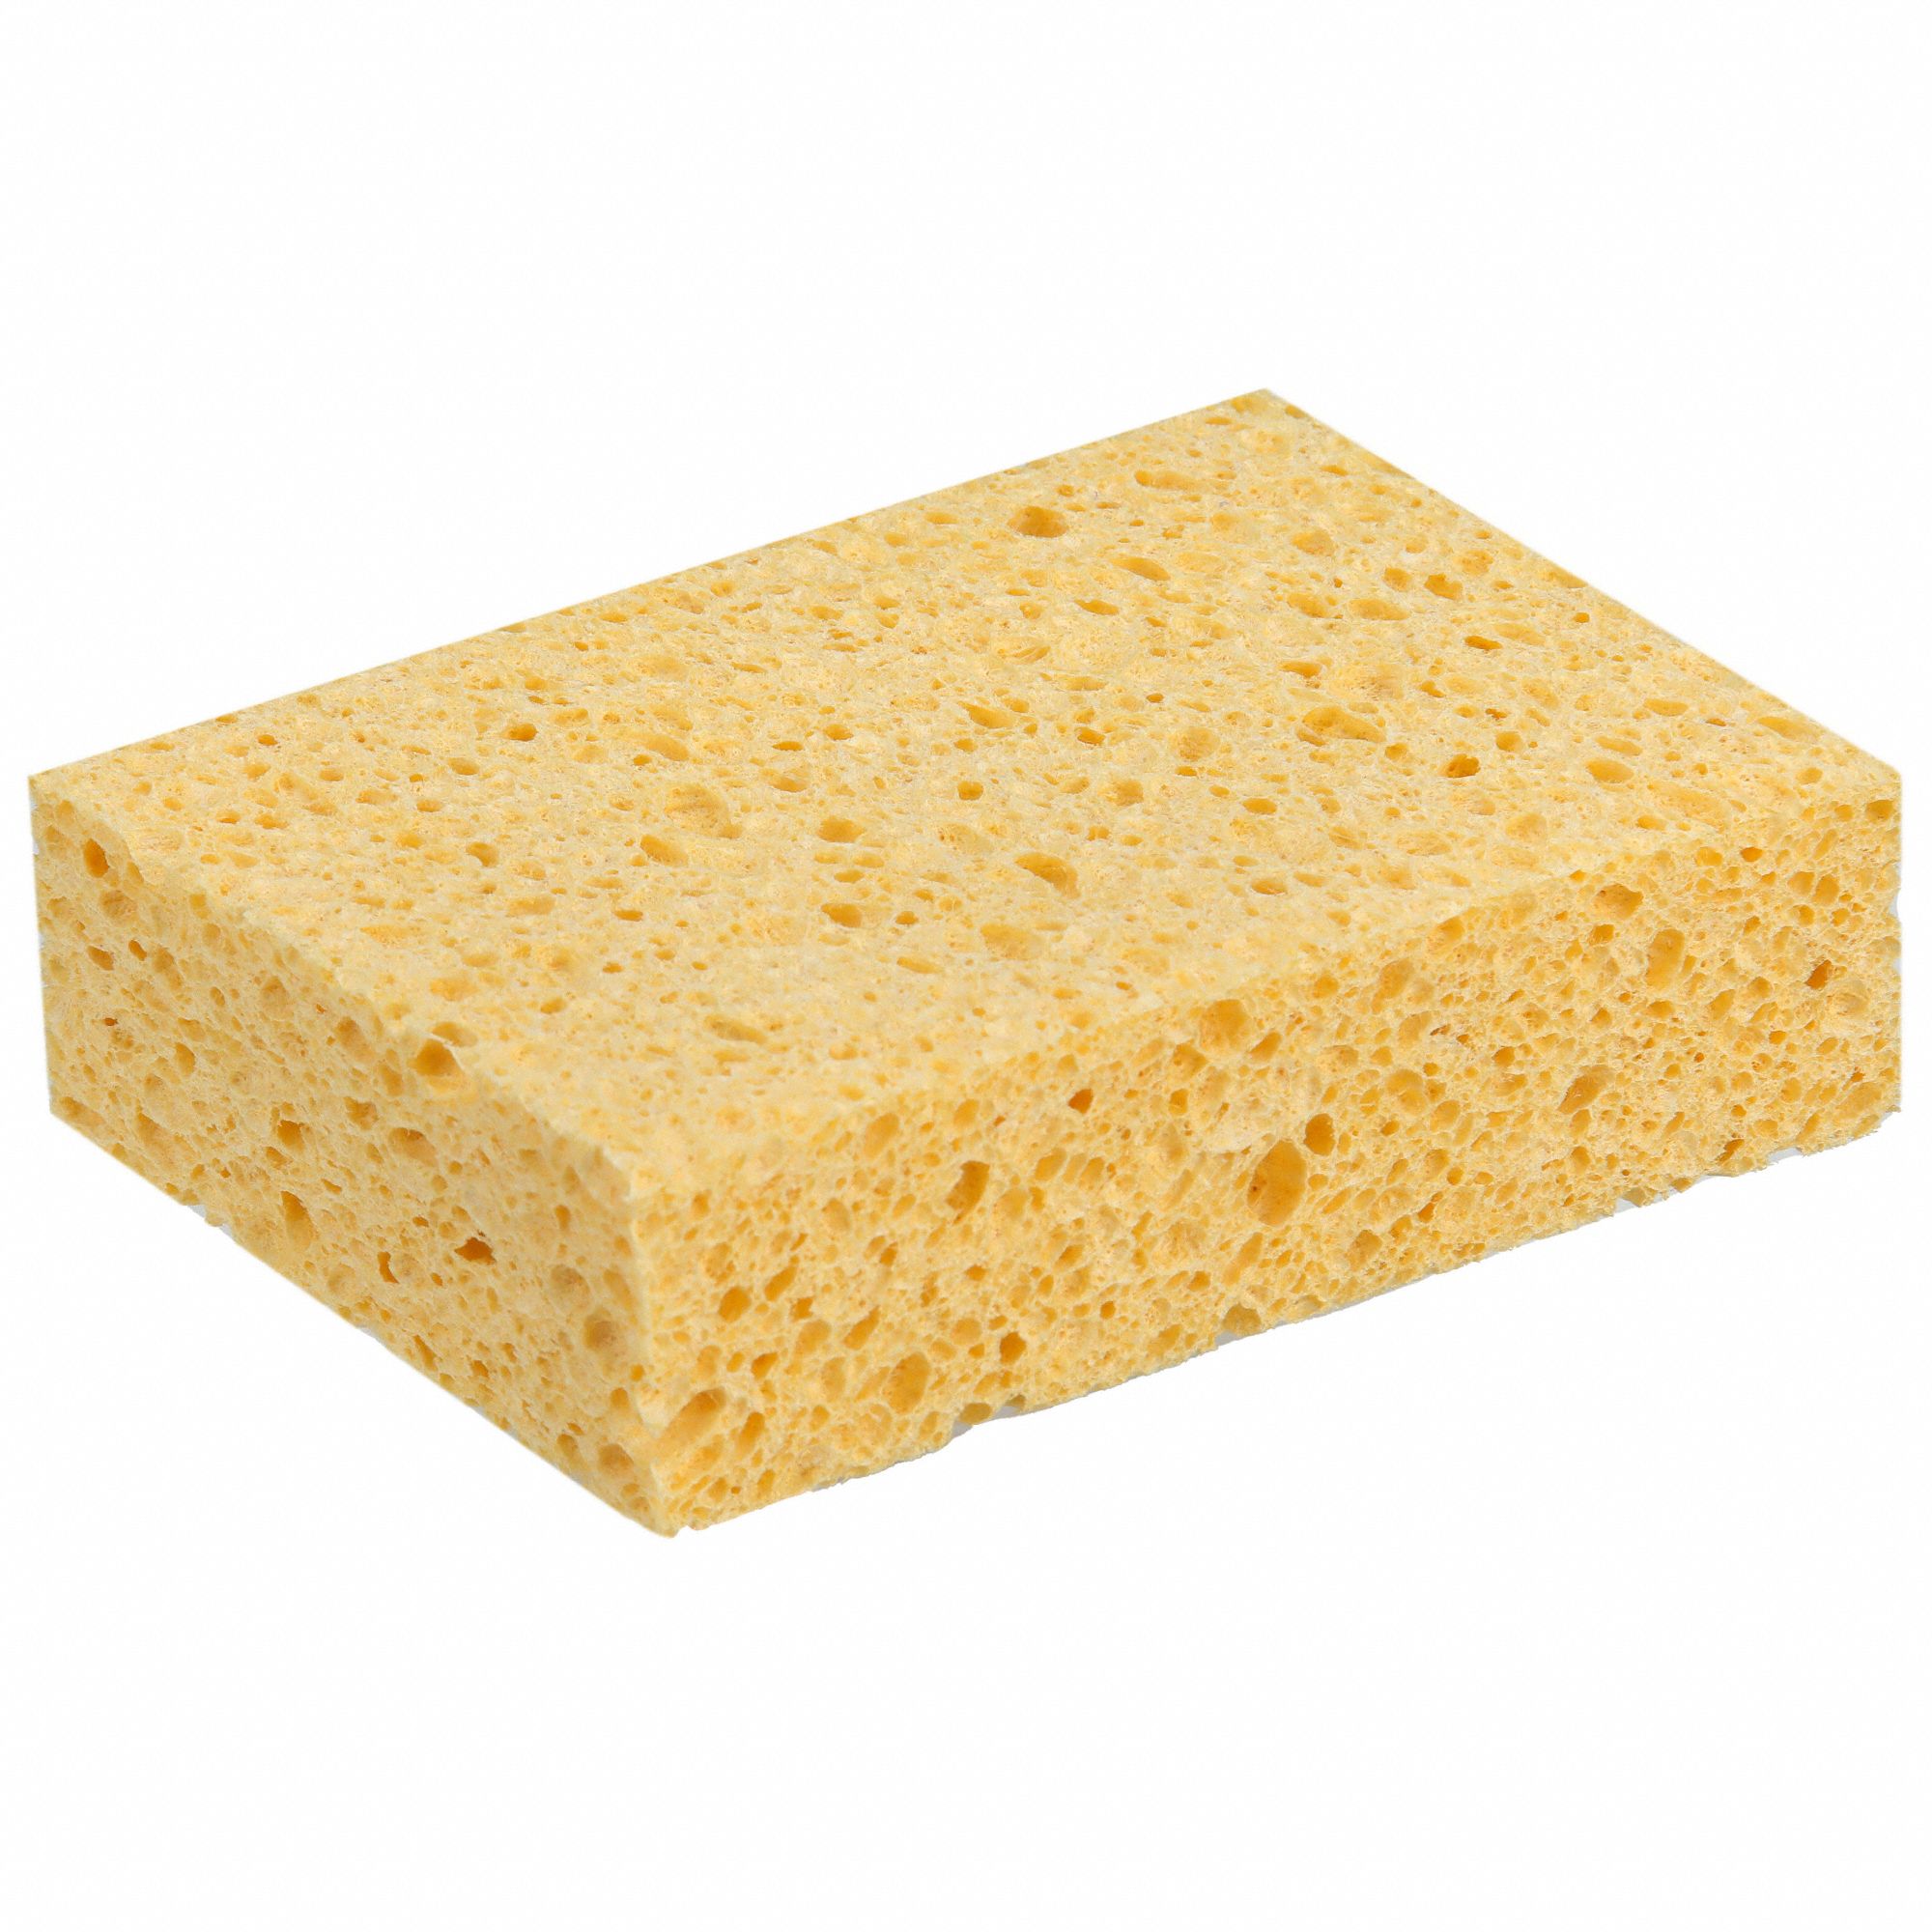 Extra Large Sponges 8x4x3 Sponges Chemical Resistant Synthetic Sponges